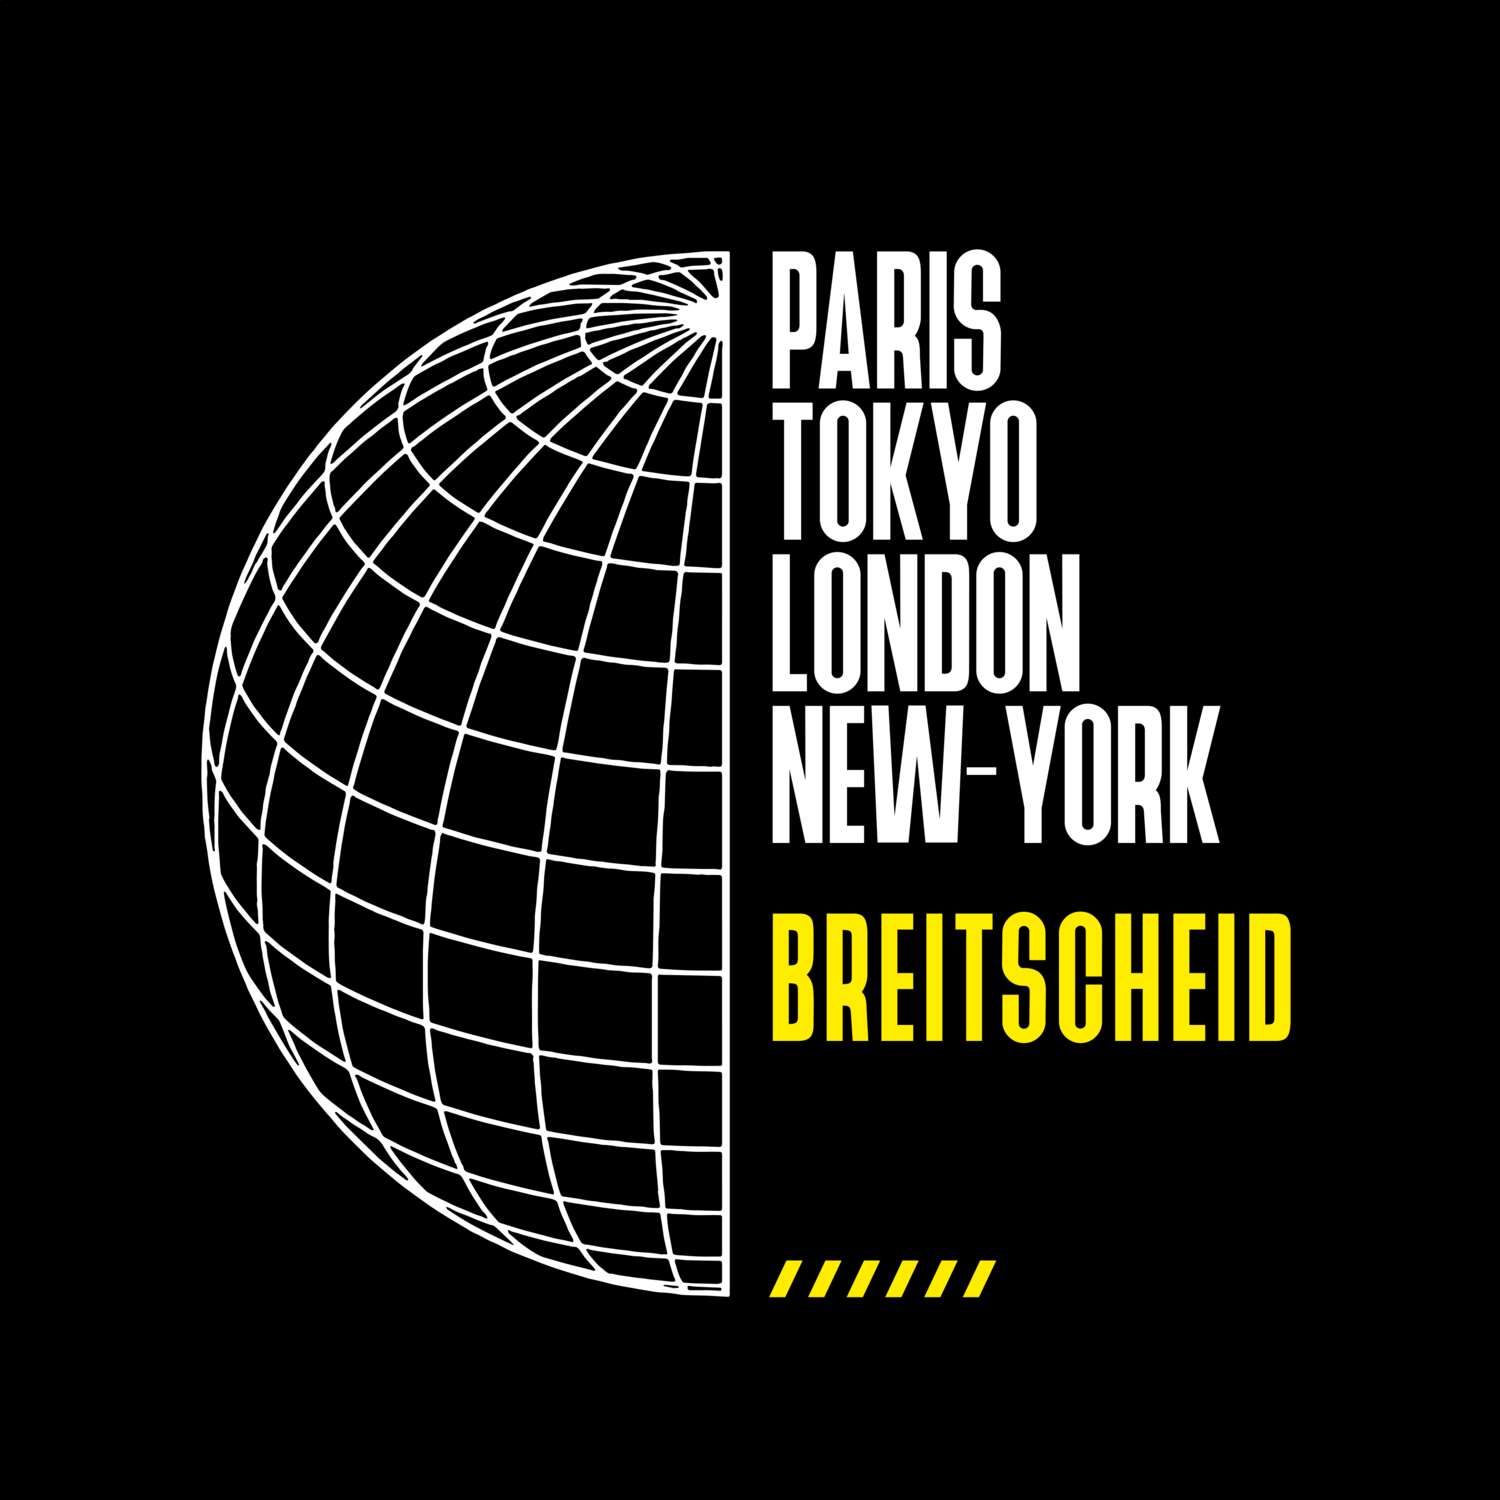 Breitscheid T-Shirt »Paris Tokyo London«